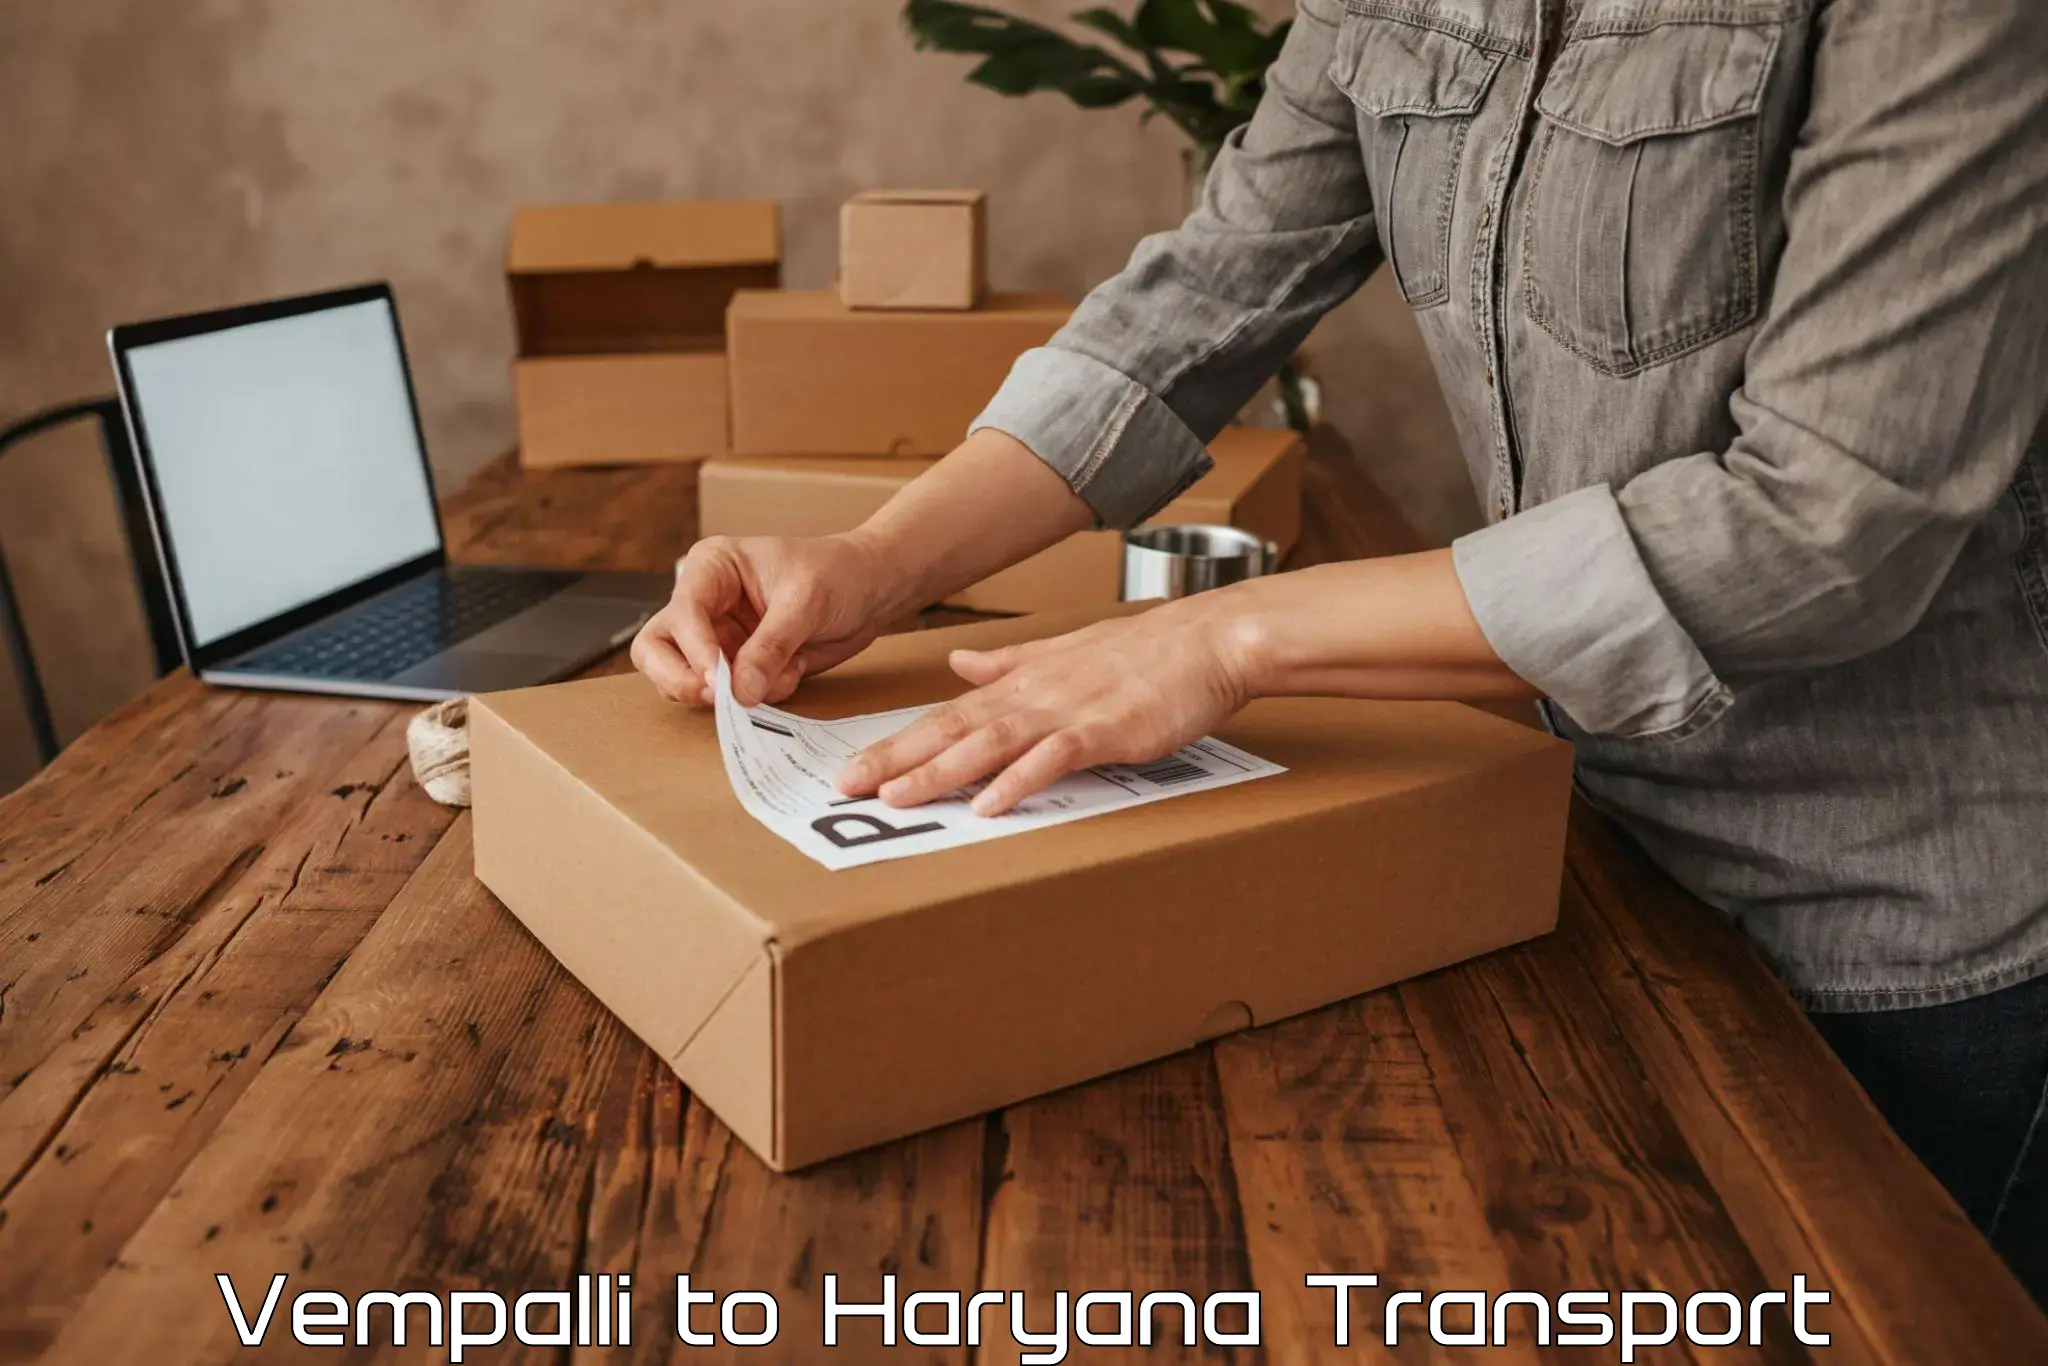 Transport in sharing Vempalli to Narwana